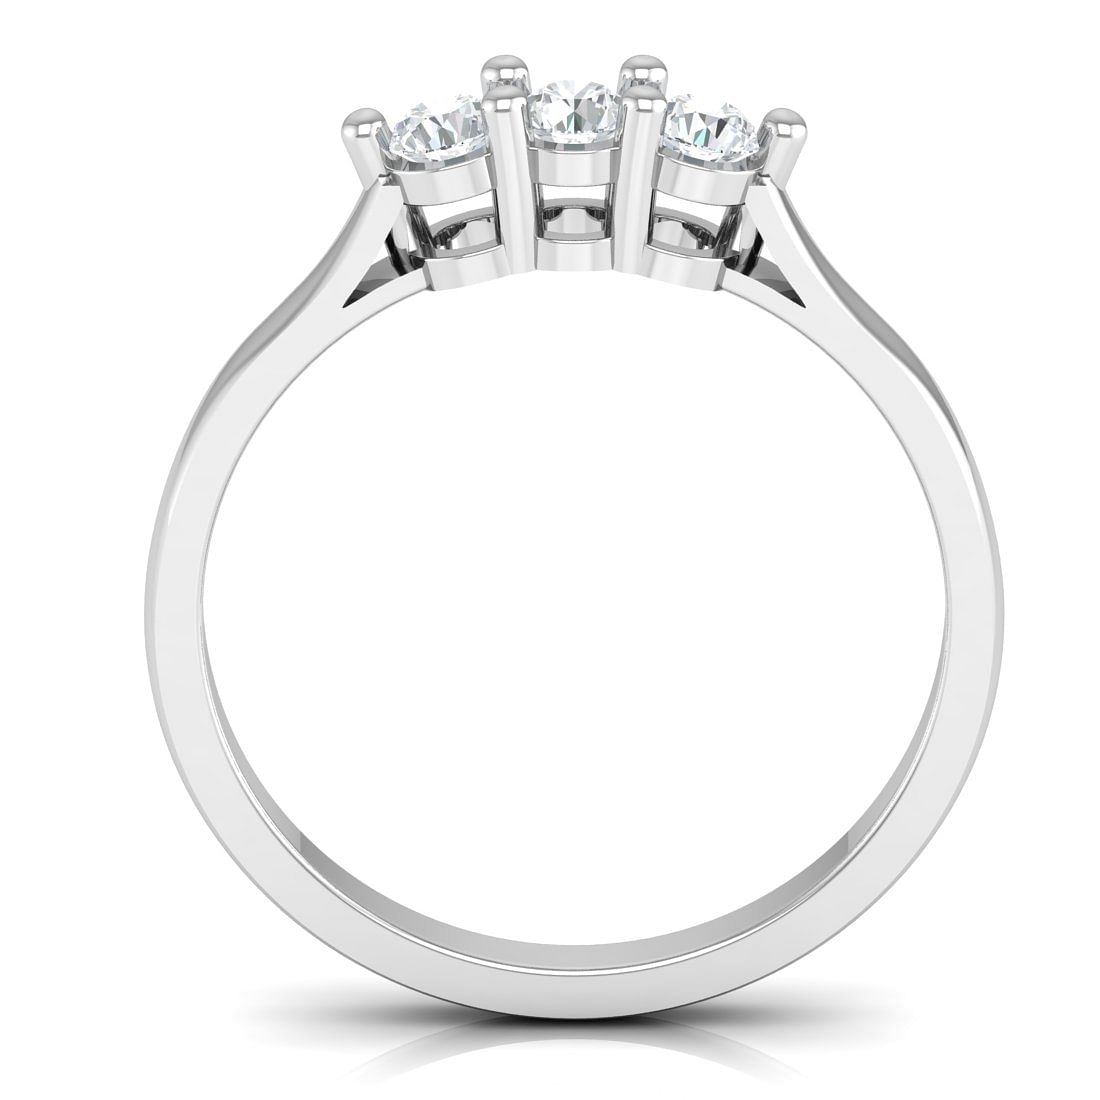 Iris Diamond Ring With White Gold For Women